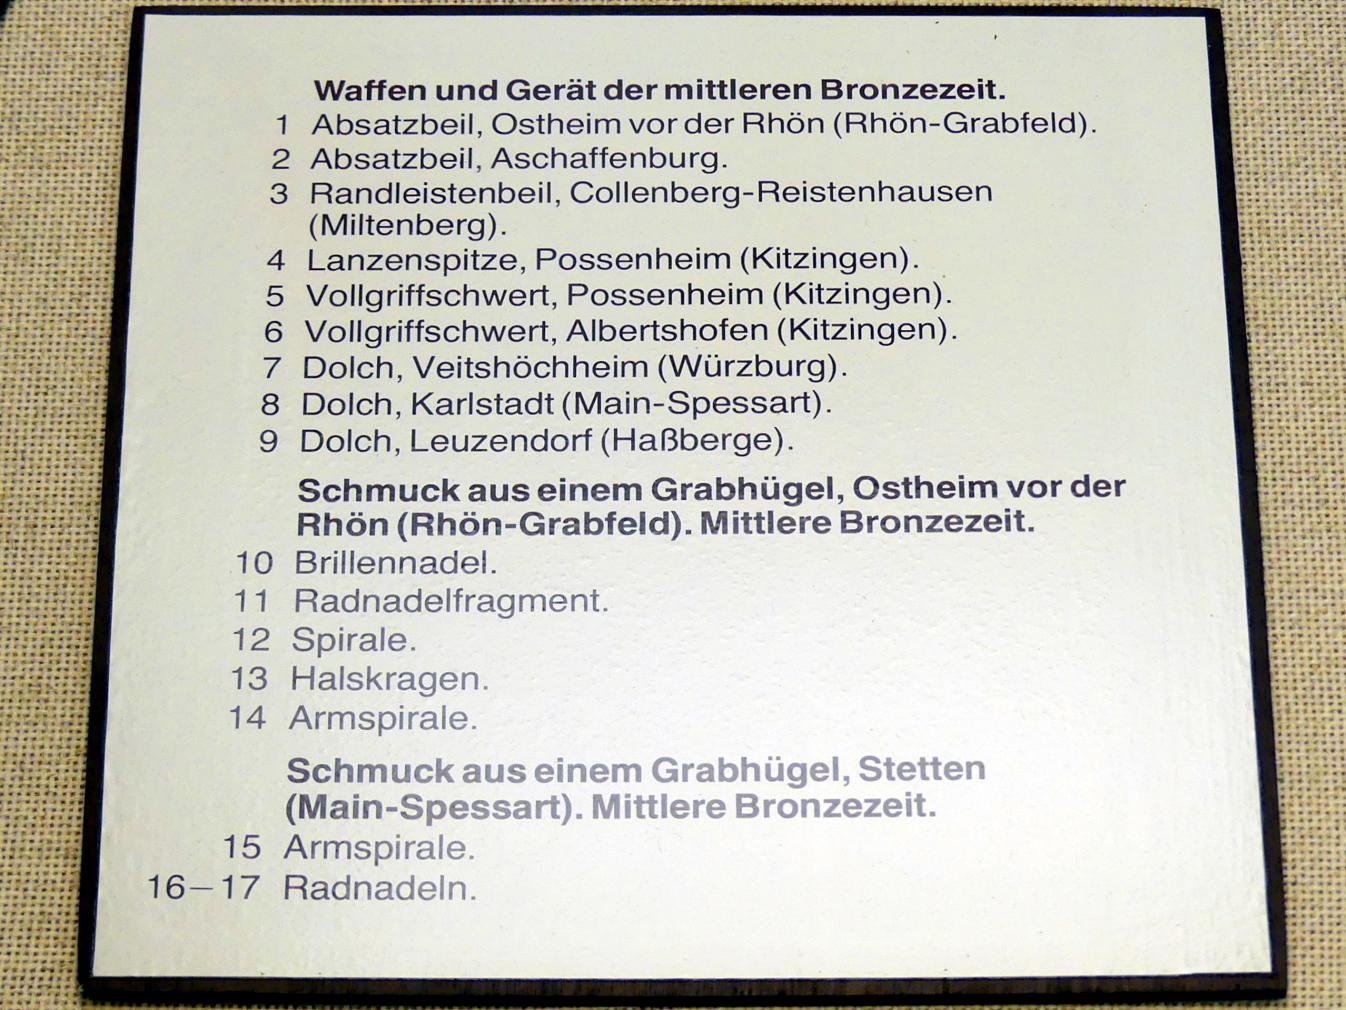 Radnadeln, Mittlere Bronzezeit, 3000 - 1300 v. Chr., Bild 2/2